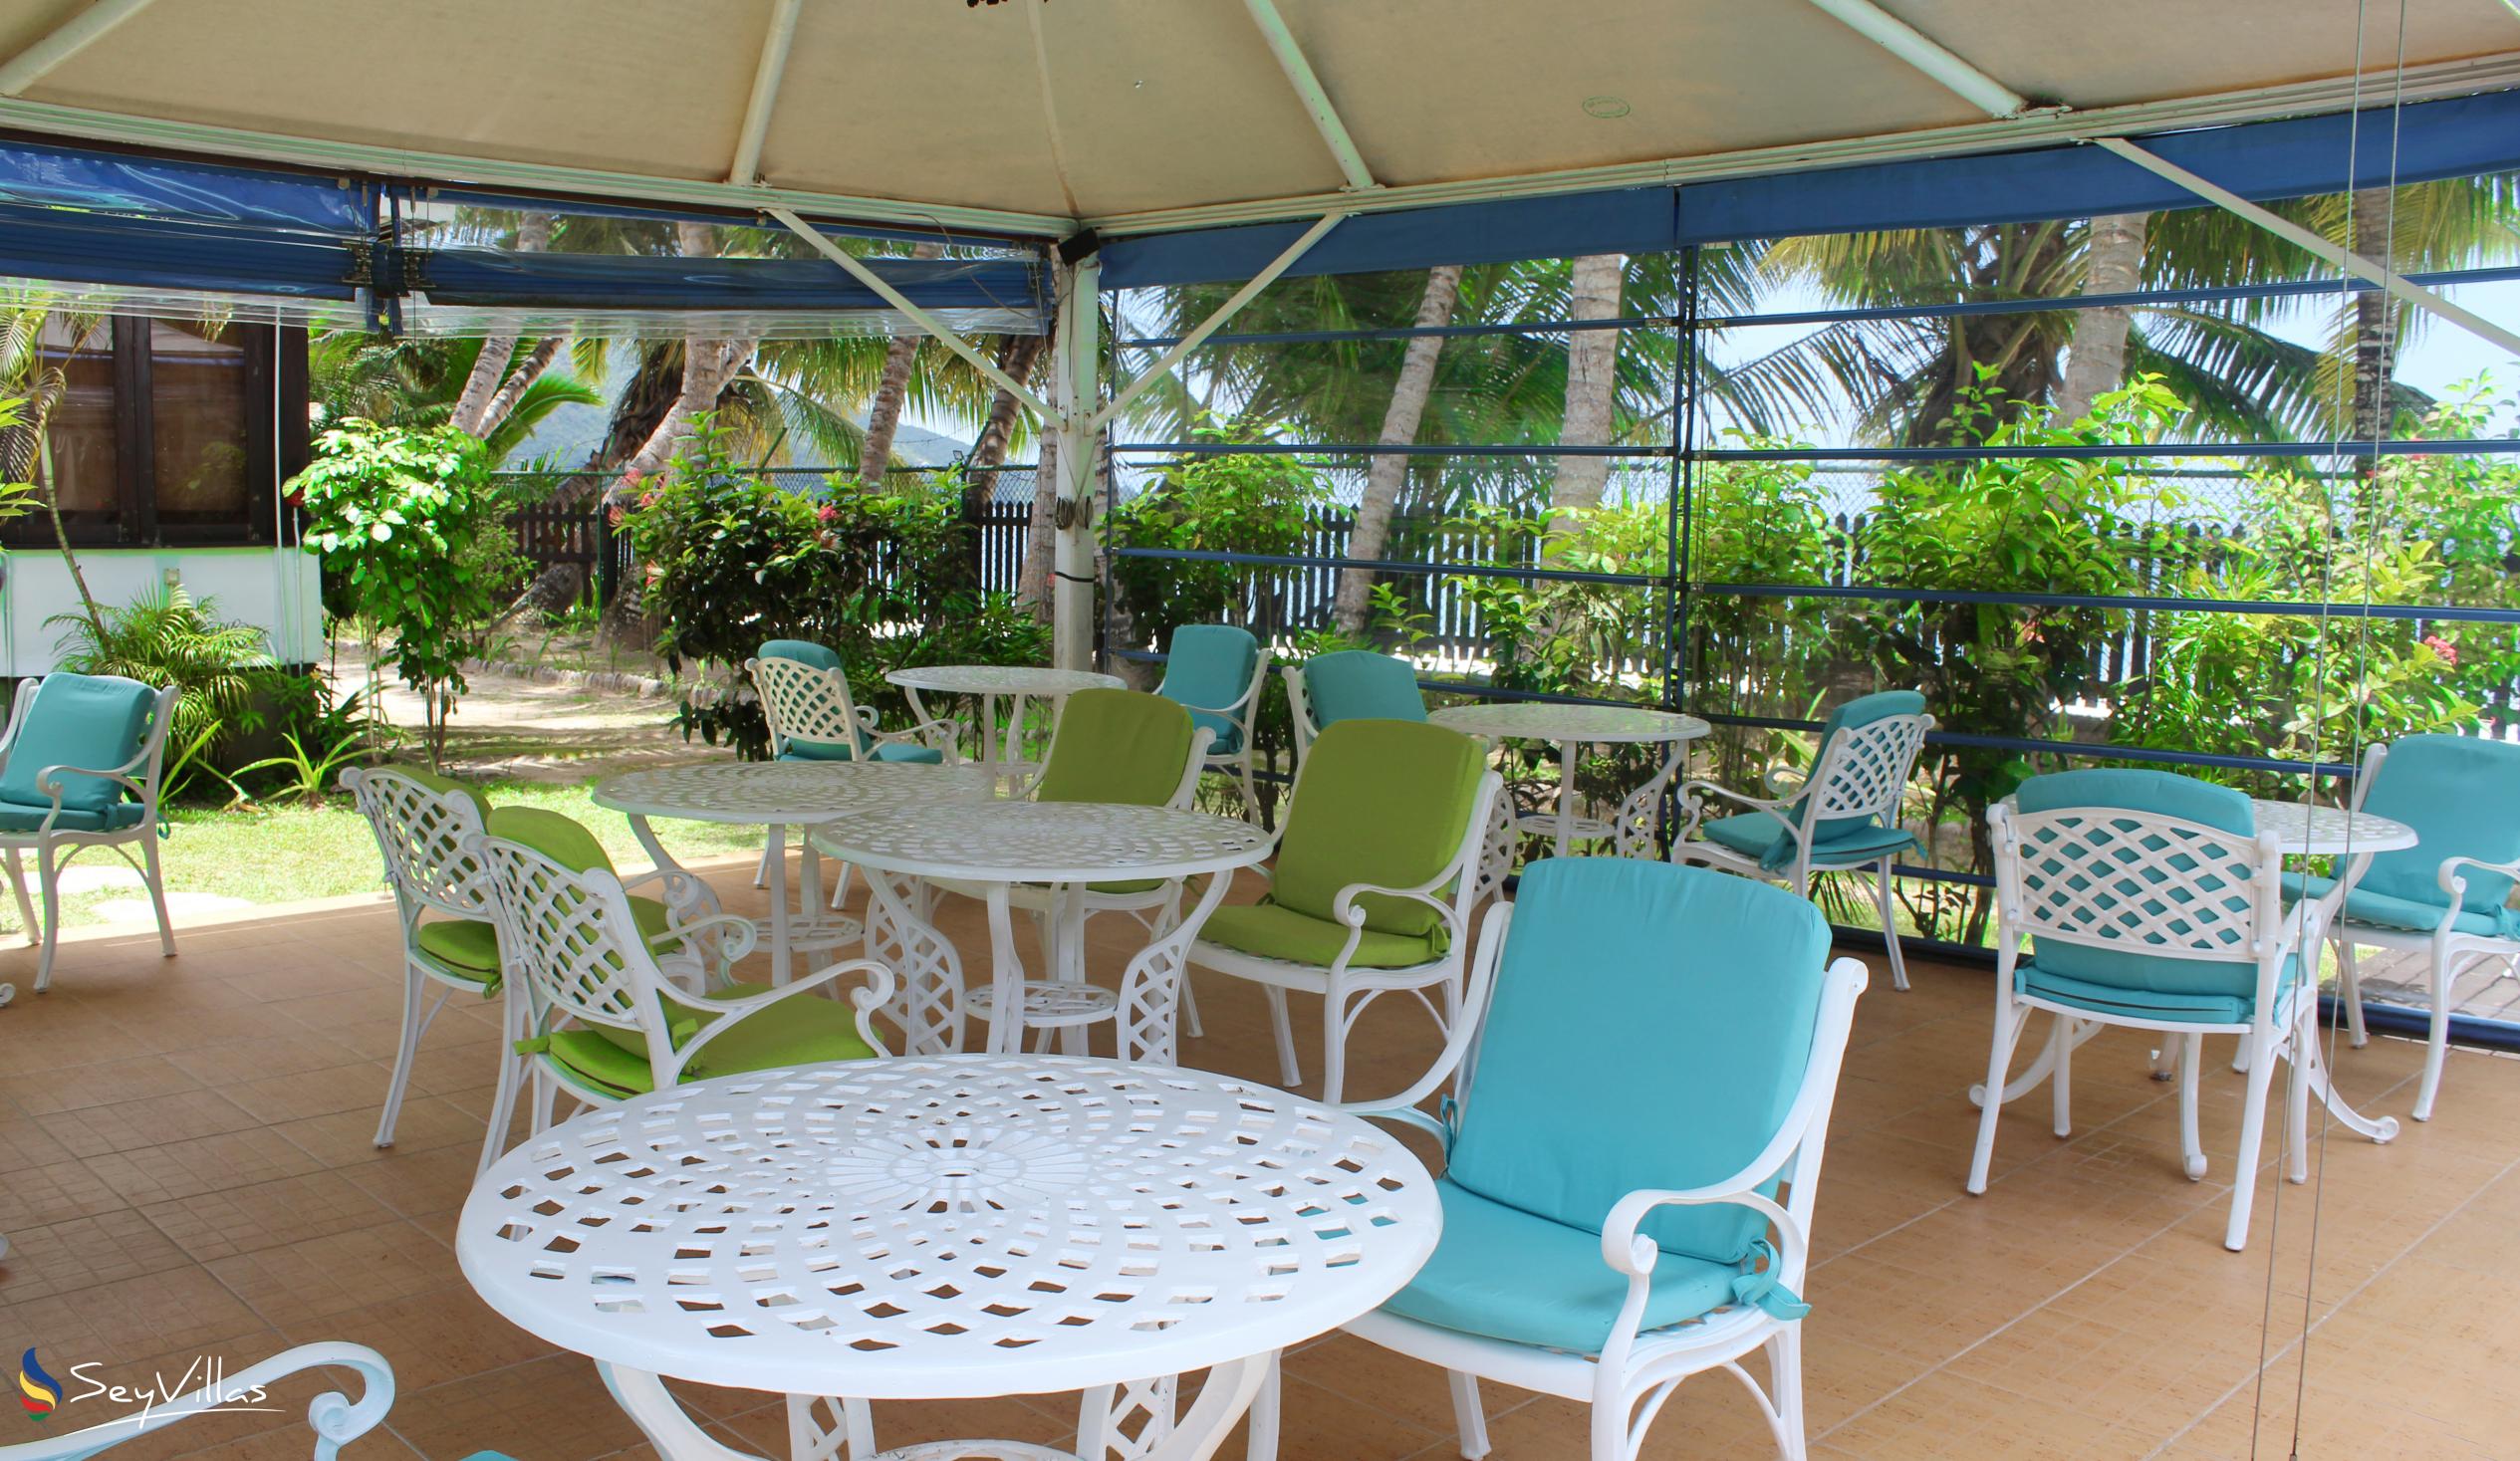 Foto 17: Le Relax Beach Resort - Aussenbereich - Praslin (Seychellen)